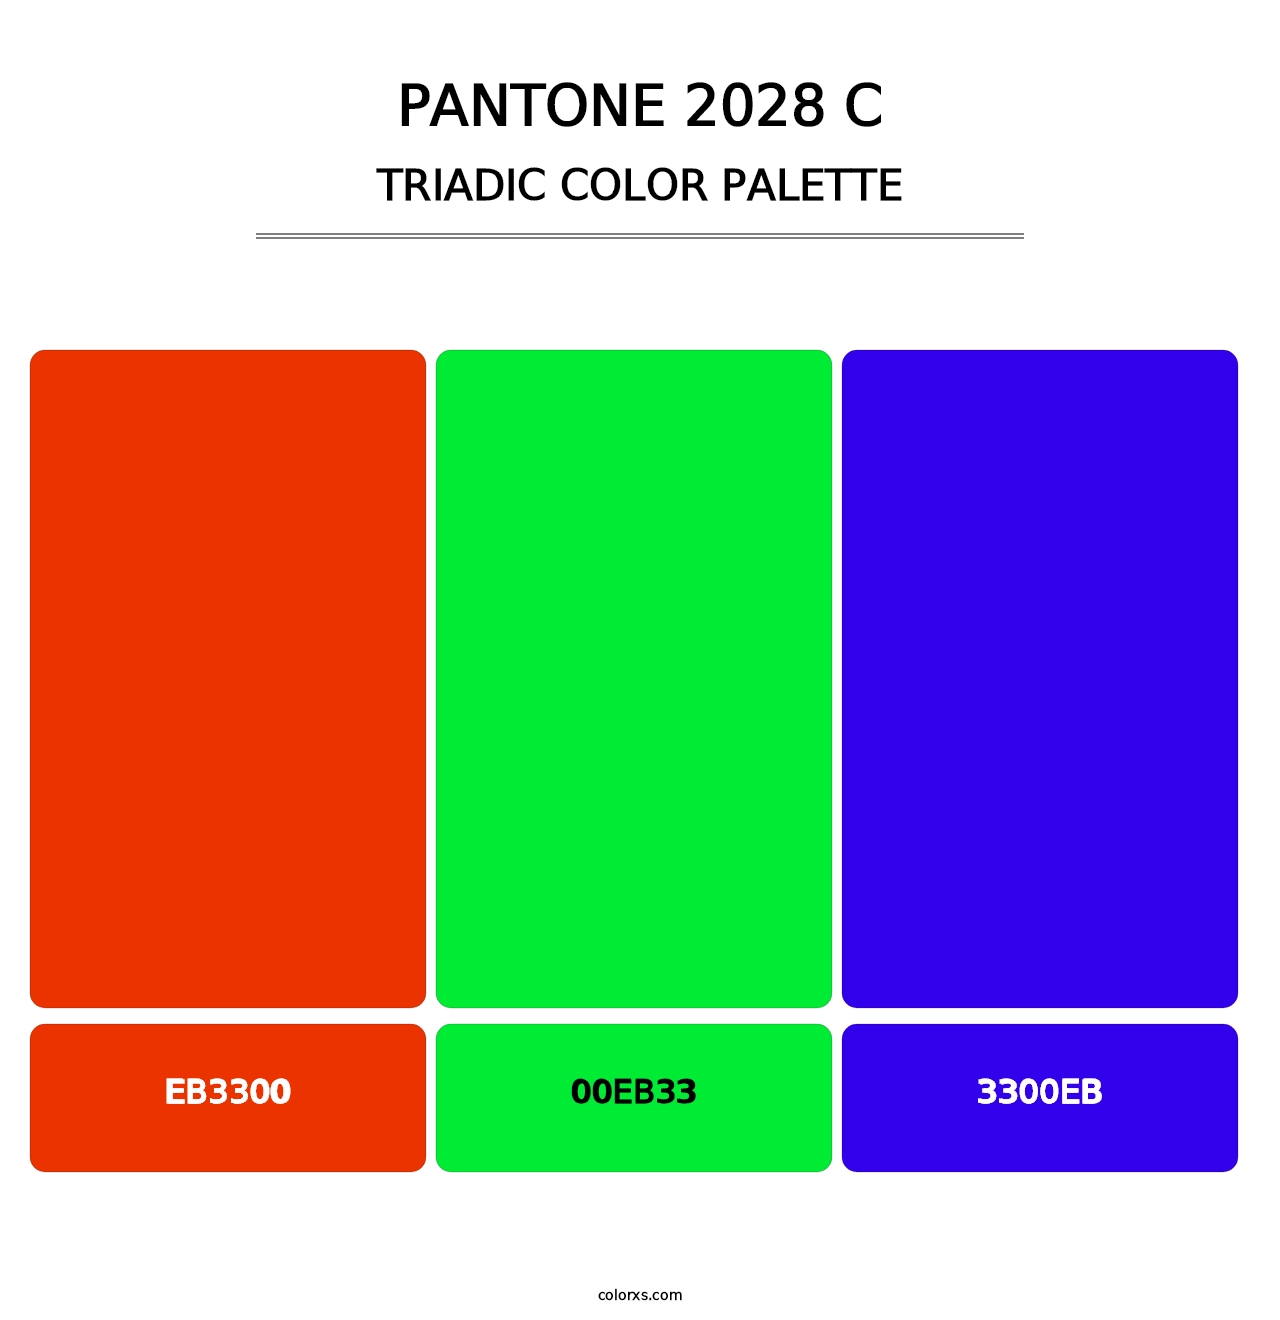 PANTONE 2028 C - Triadic Color Palette